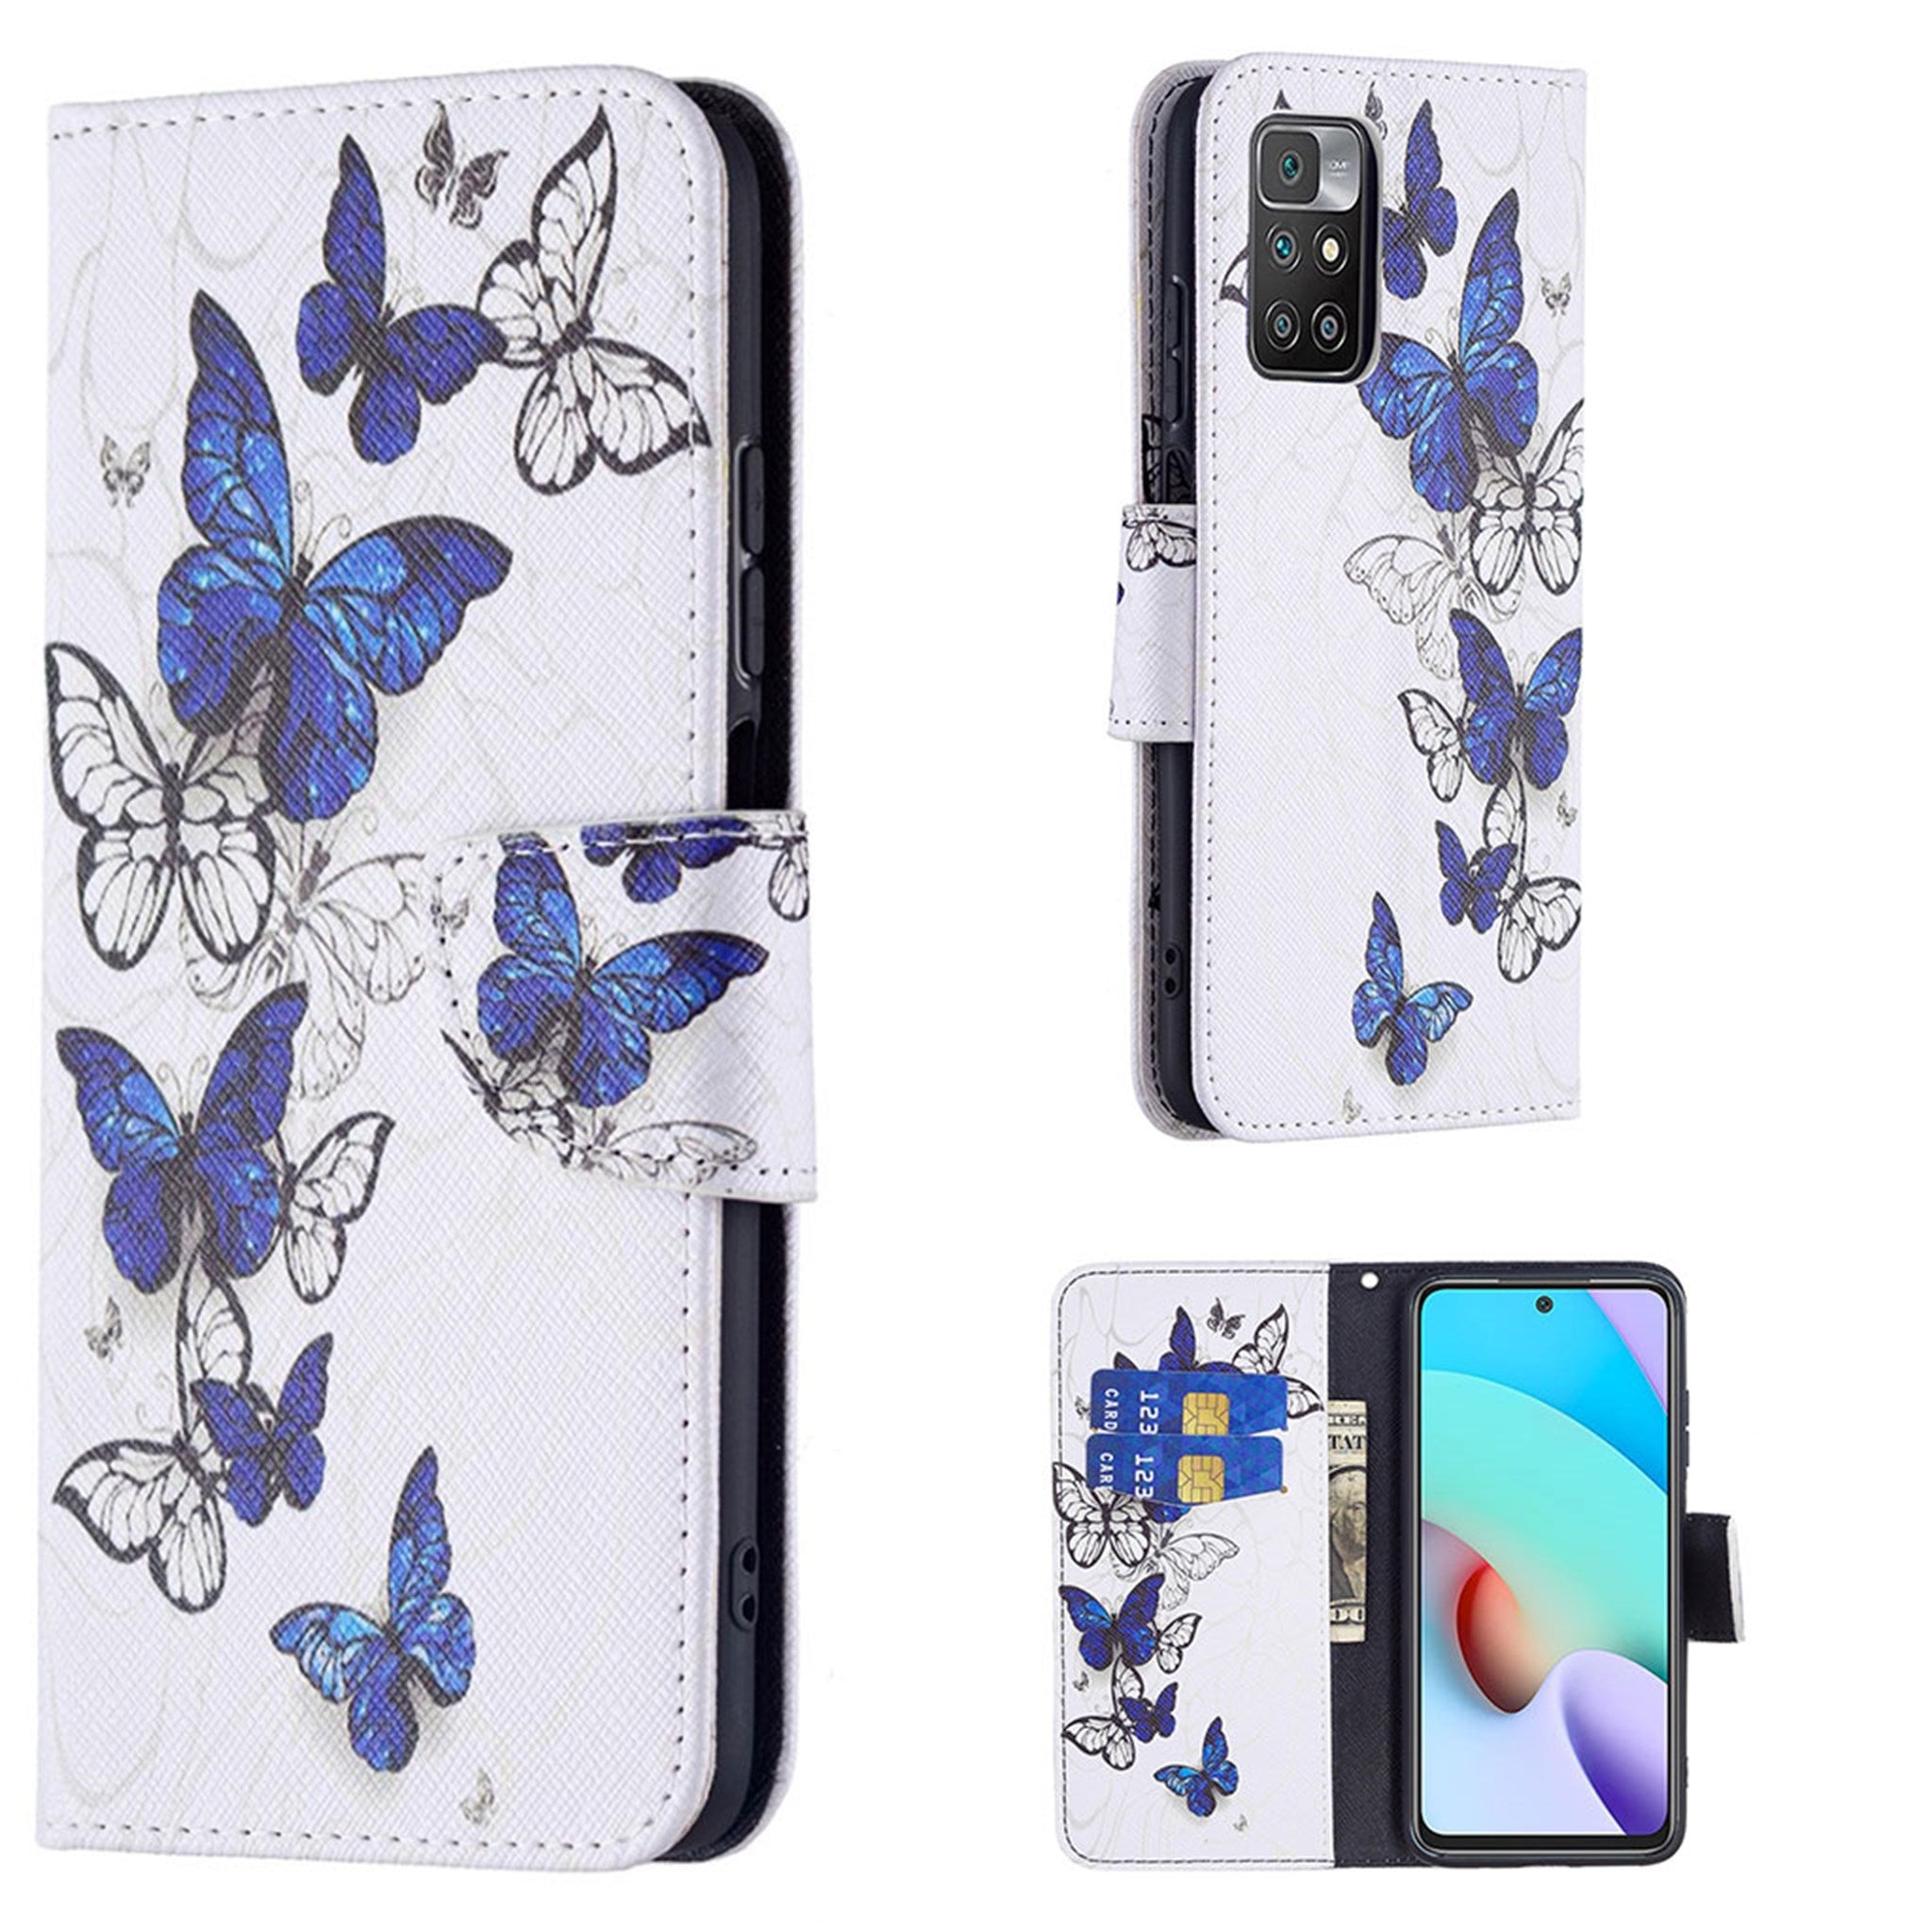 Wonderland Xiaomi Redmi 10 Prime / Redmi 10 flip case - Blue / White Butterflies